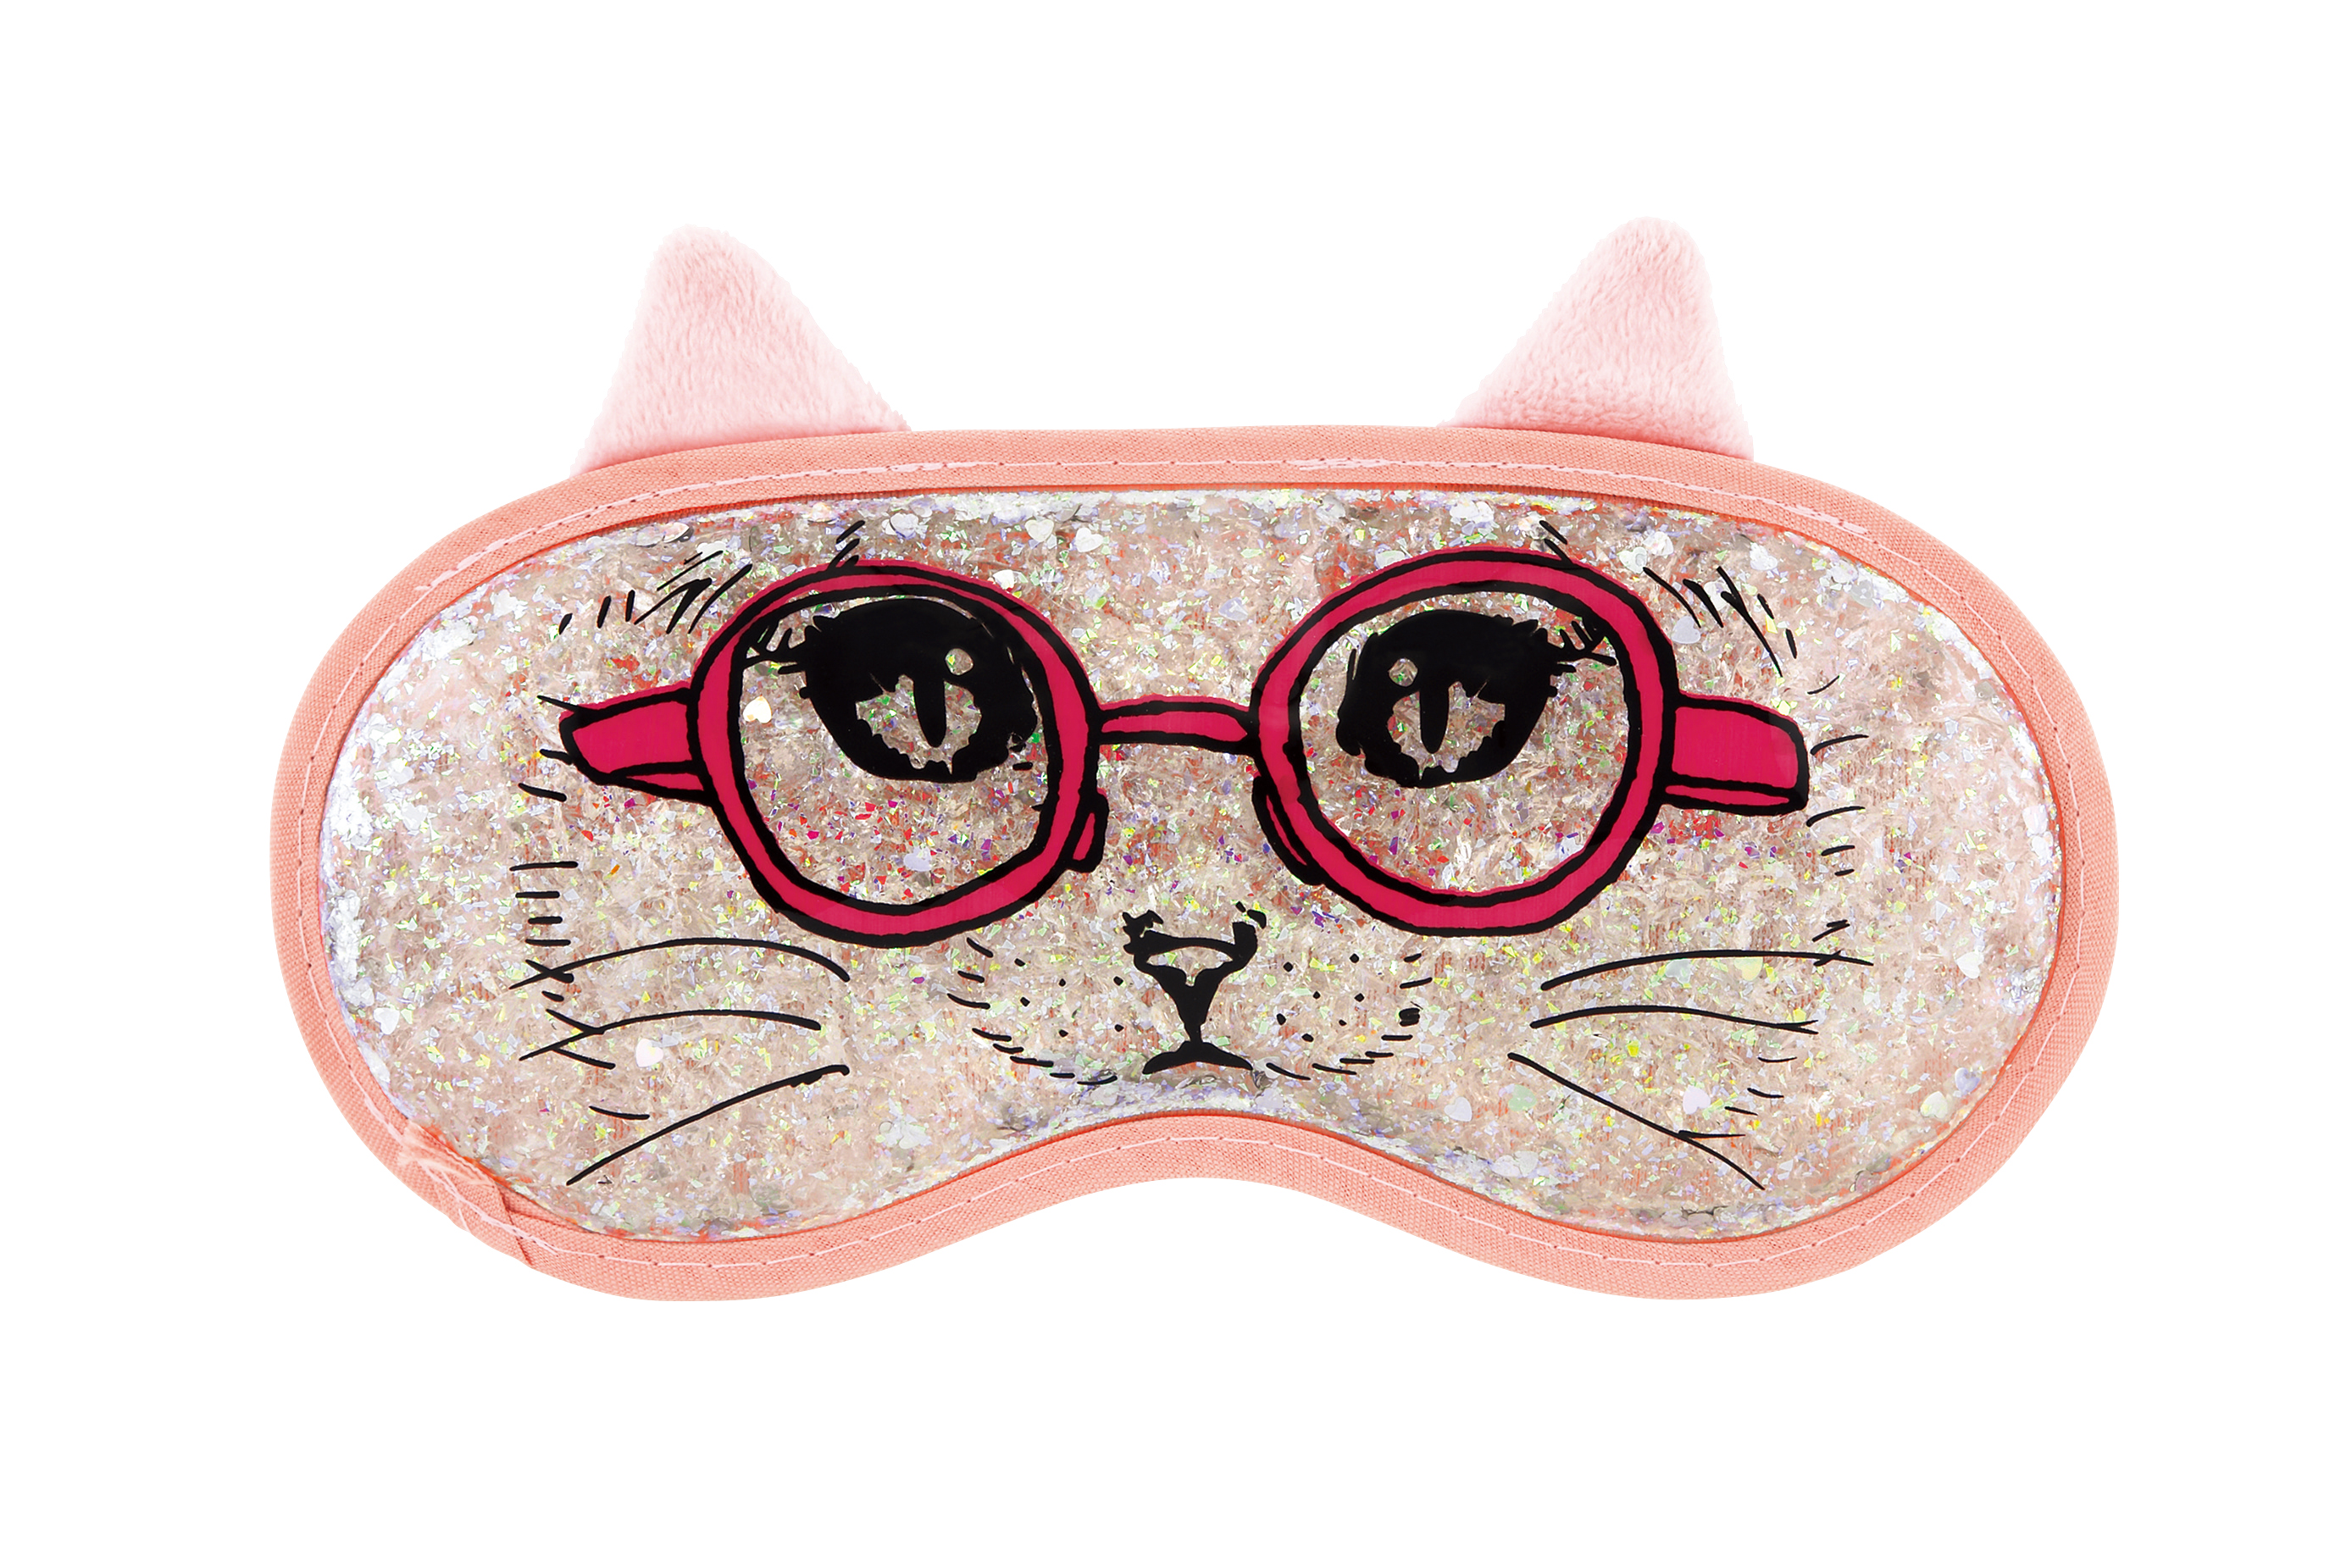 シリーズ累計販売数80万個 ネコ好きにはたまらないデザインの冷感 温感リラクゼーショングッズ Aqua Jelly Cat Eye Pillow アクアジェリー キャットアイピロー 発売 株式会社ラドンナのプレスリリース